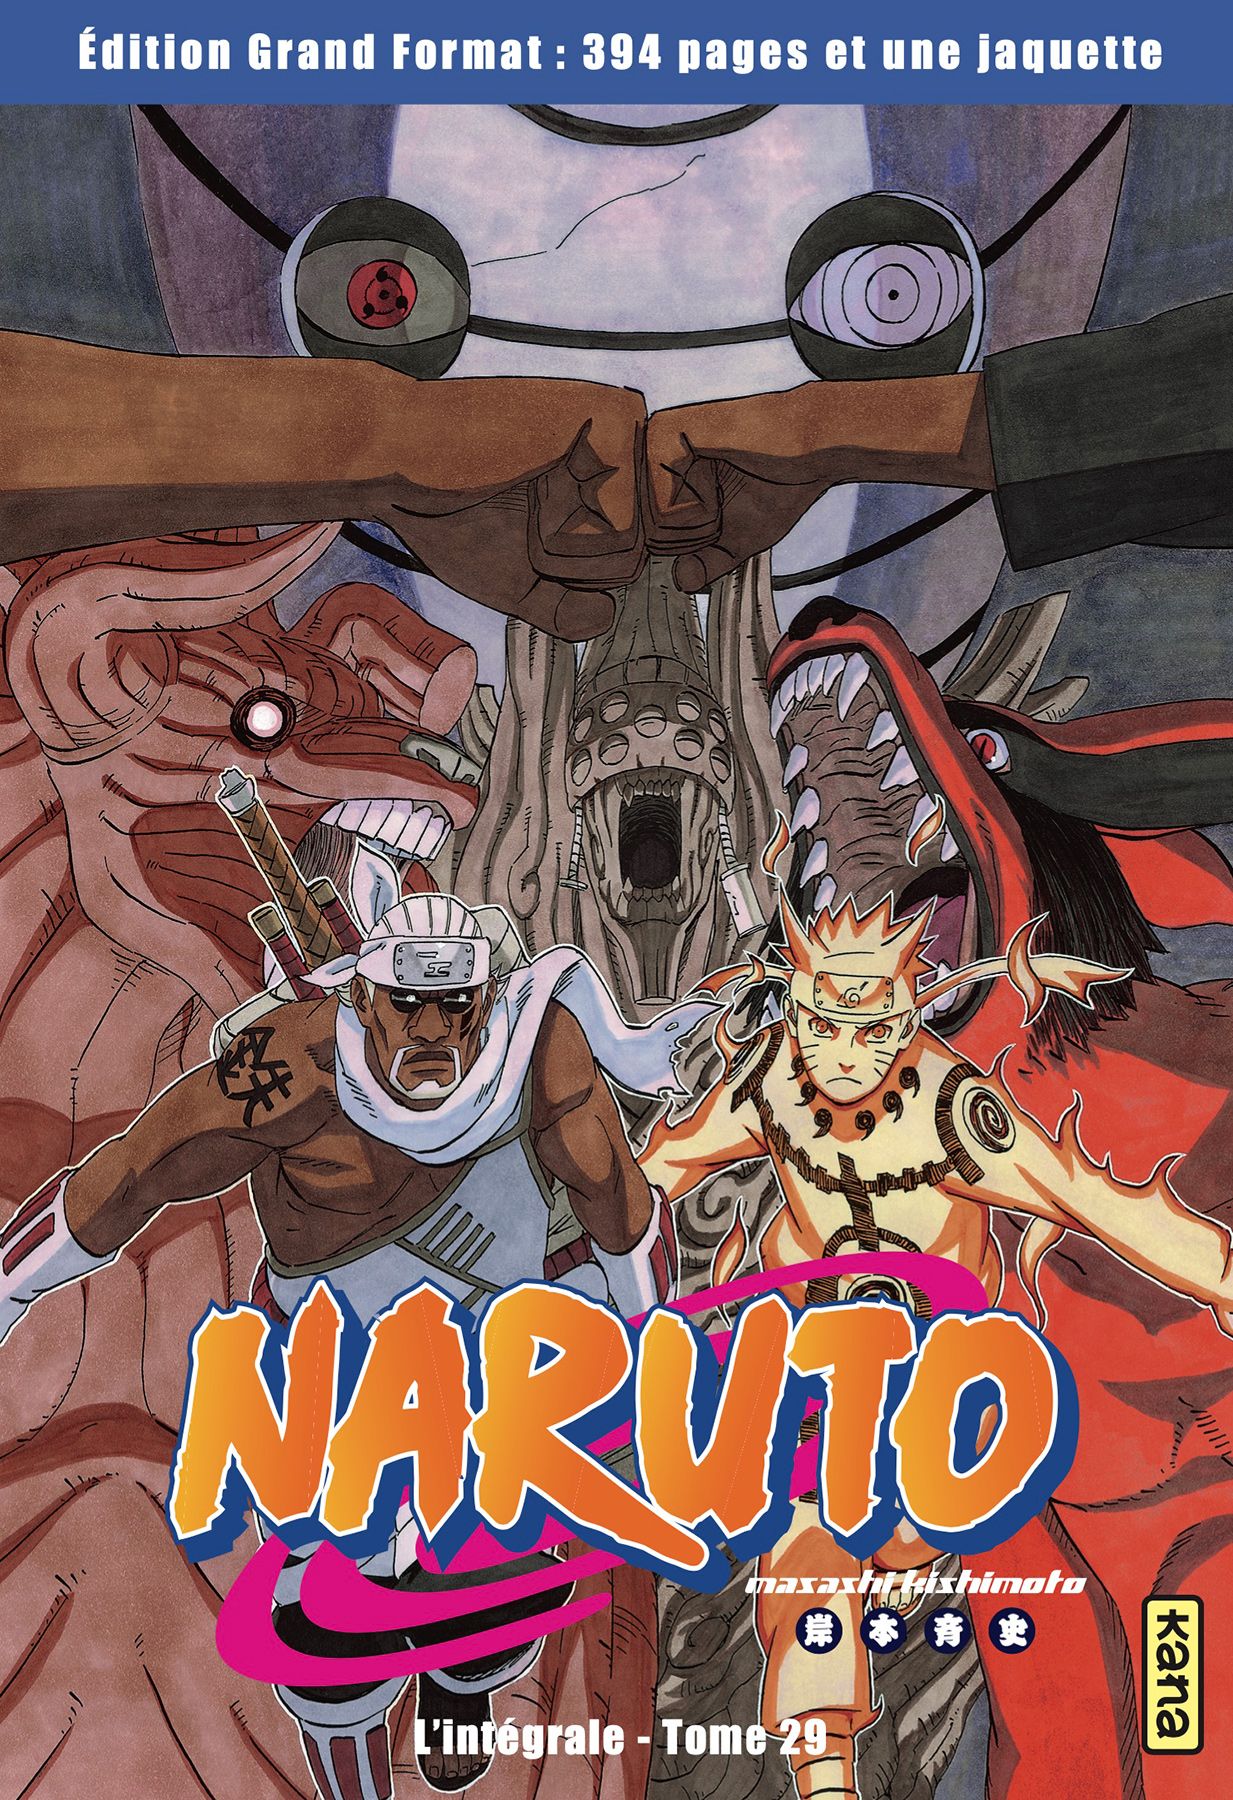 Naruto - Hachette collection Vol.29